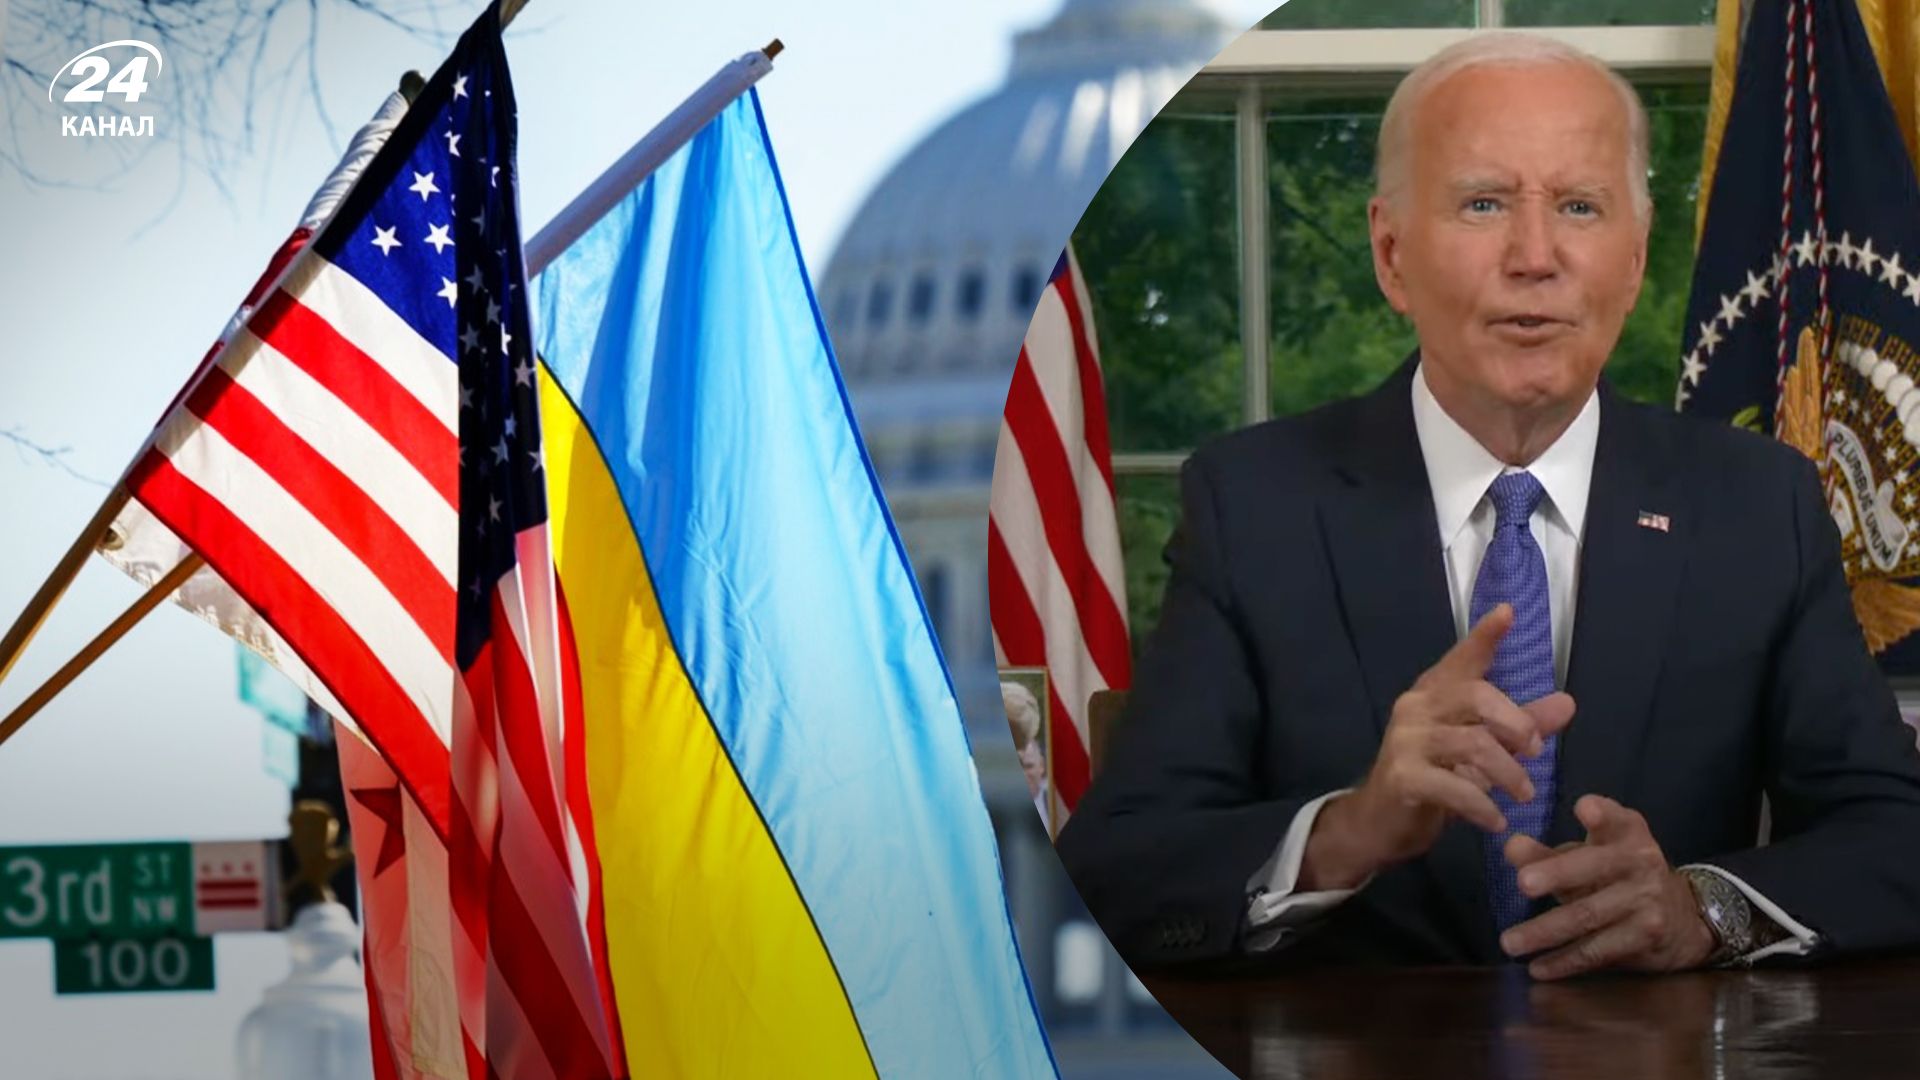 Байден в обращении к нации не забыл упомянуть и об Украине